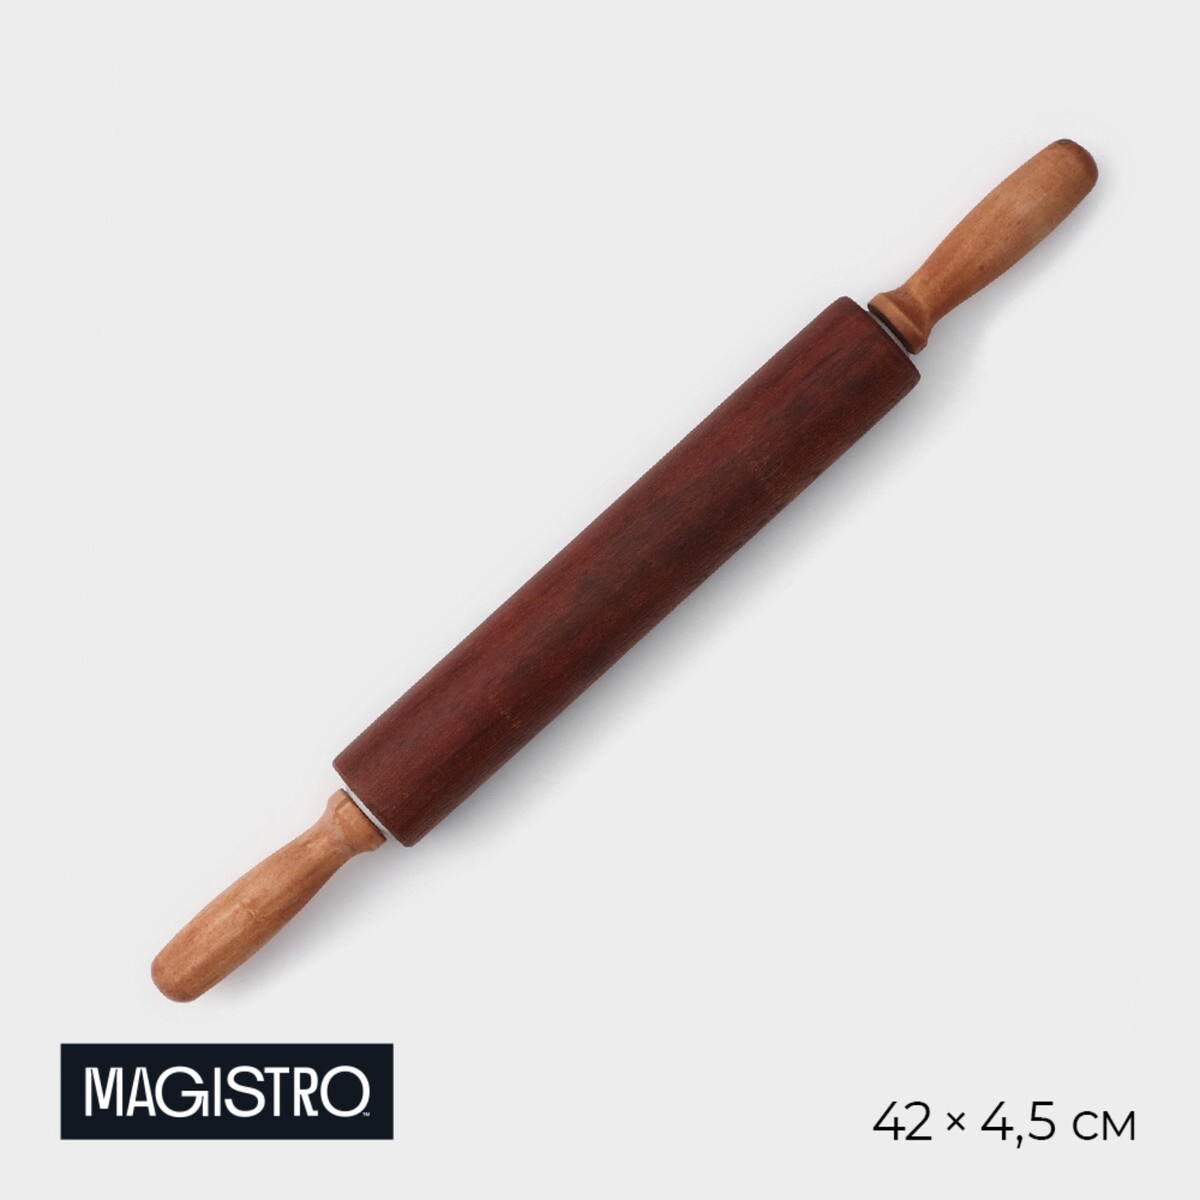 Скалка деревянная magistro, 43×4 см, вращающаяся, с фигурными ручками, акация скалка деревянная magistro 43×4 см вращающаяся с фигурными ручками акация